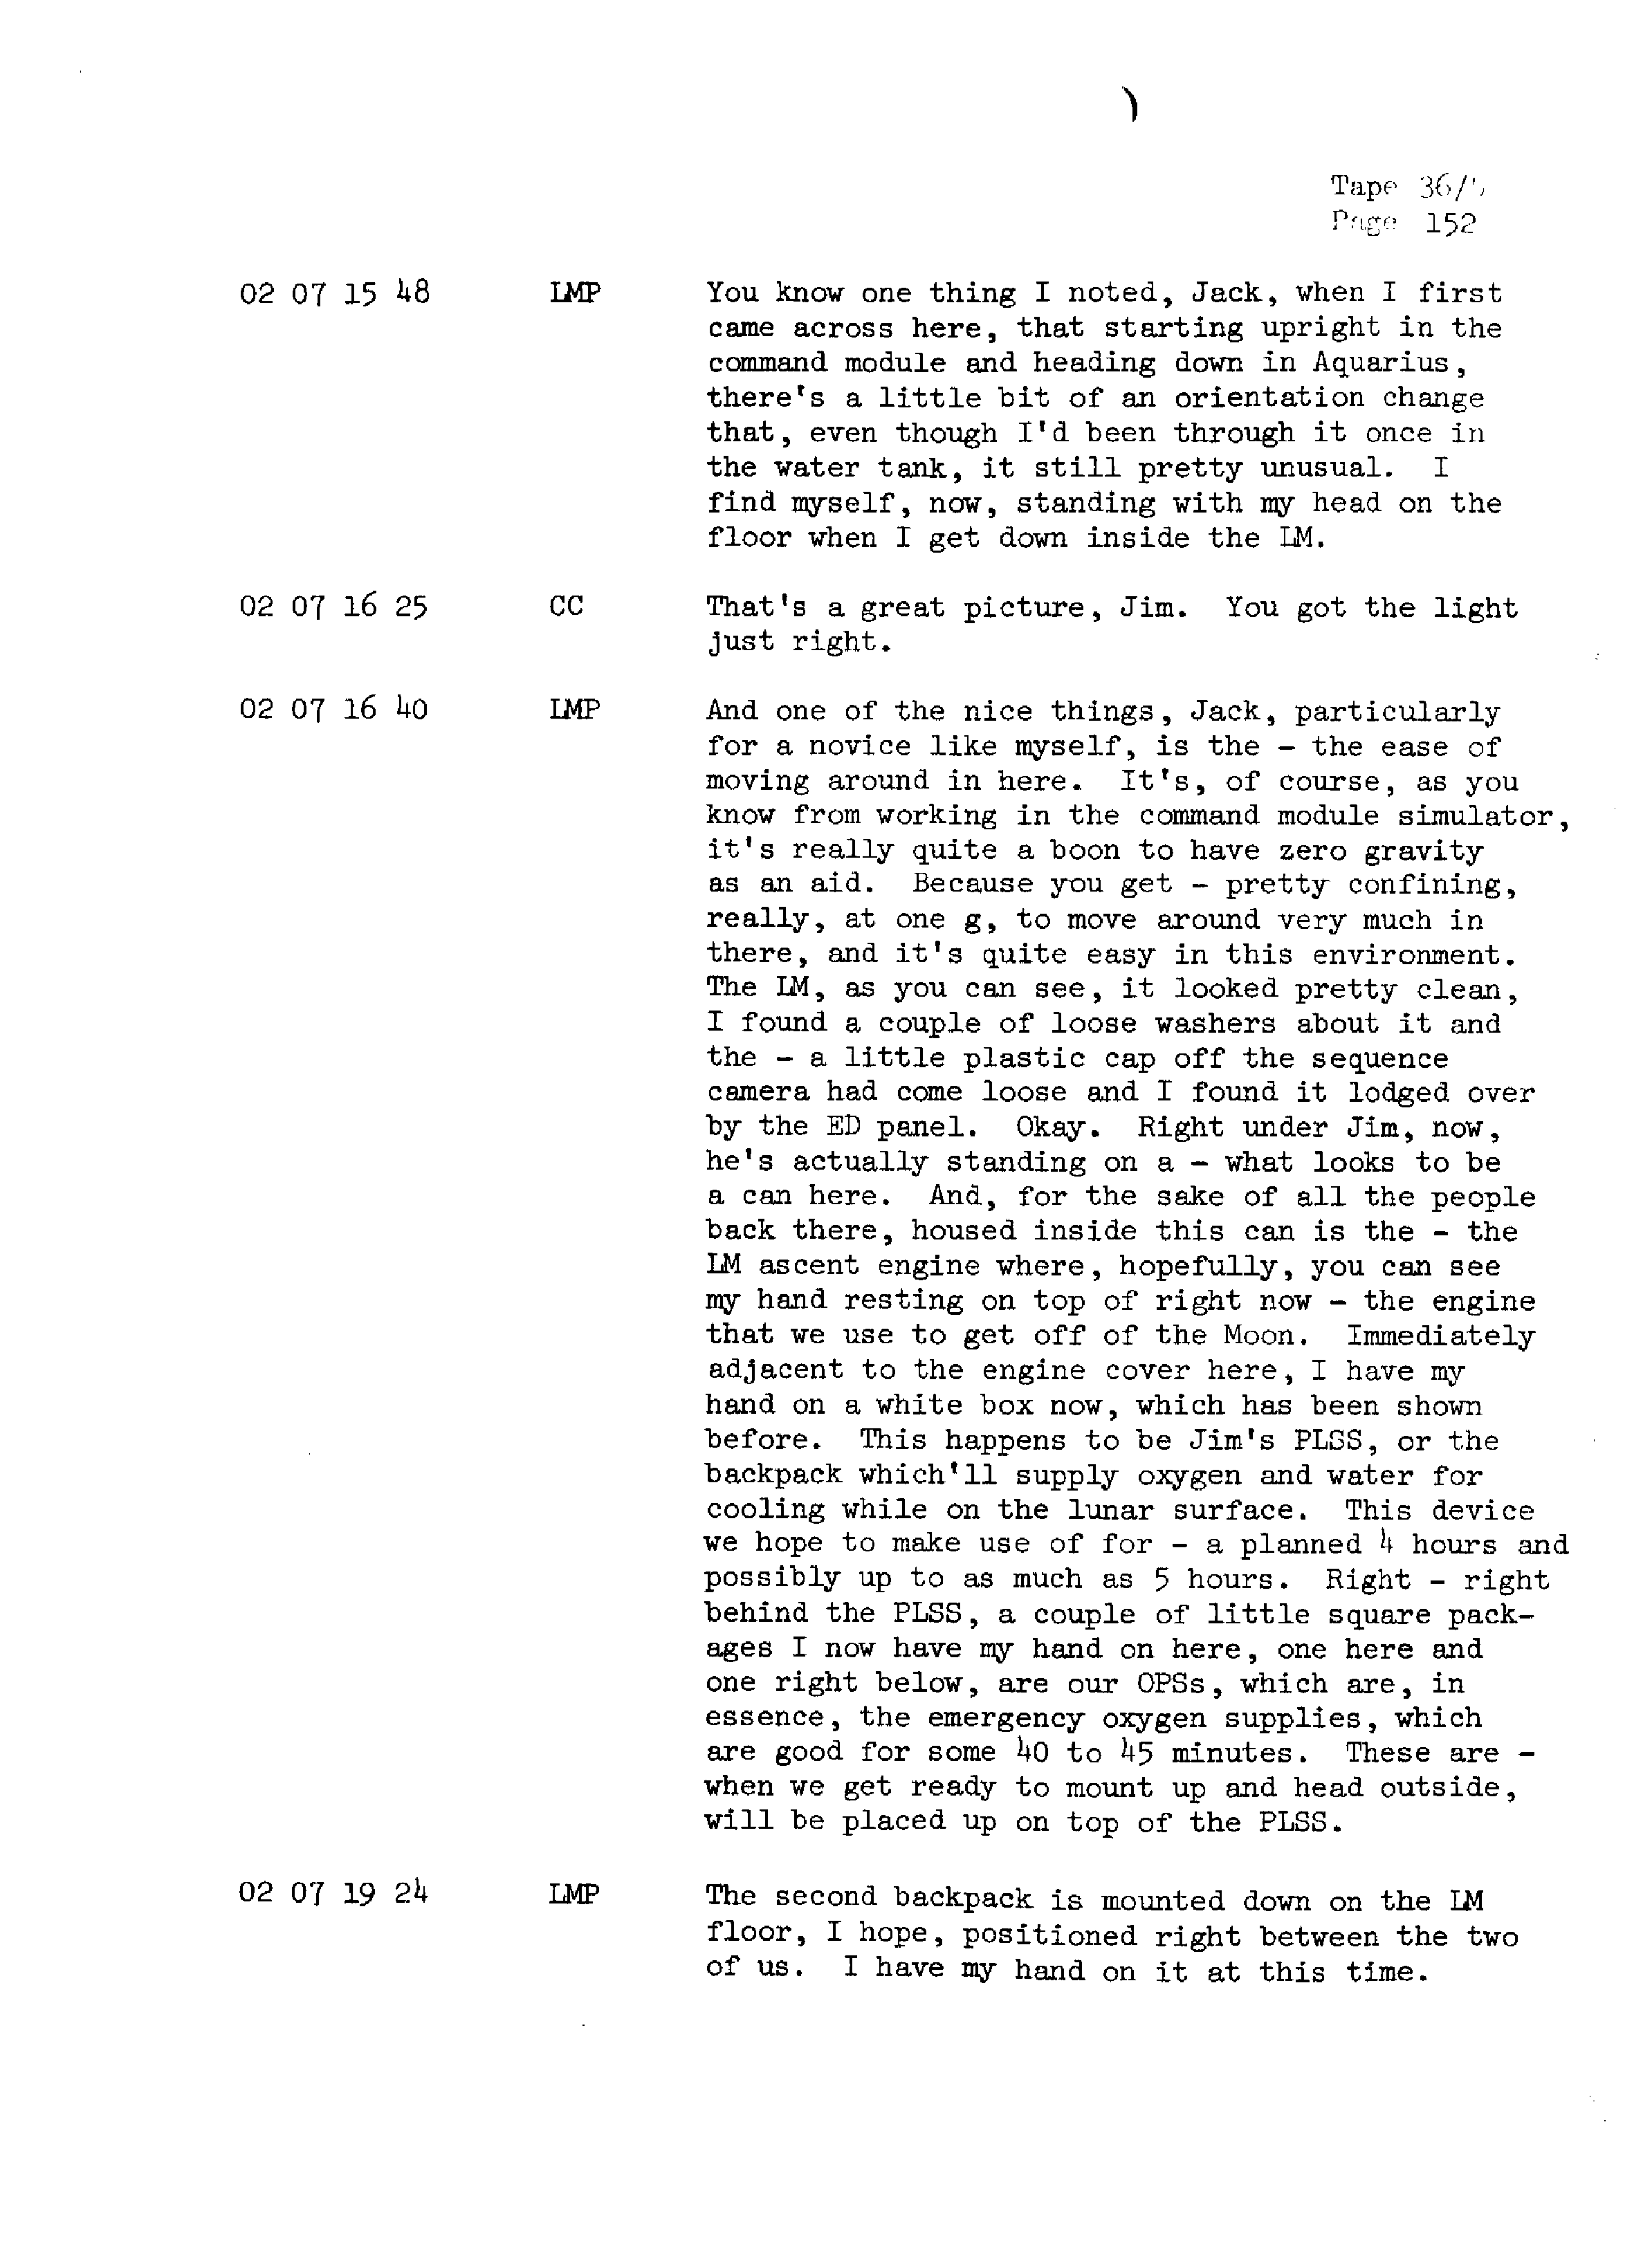 Page 159 of Apollo 13’s original transcript